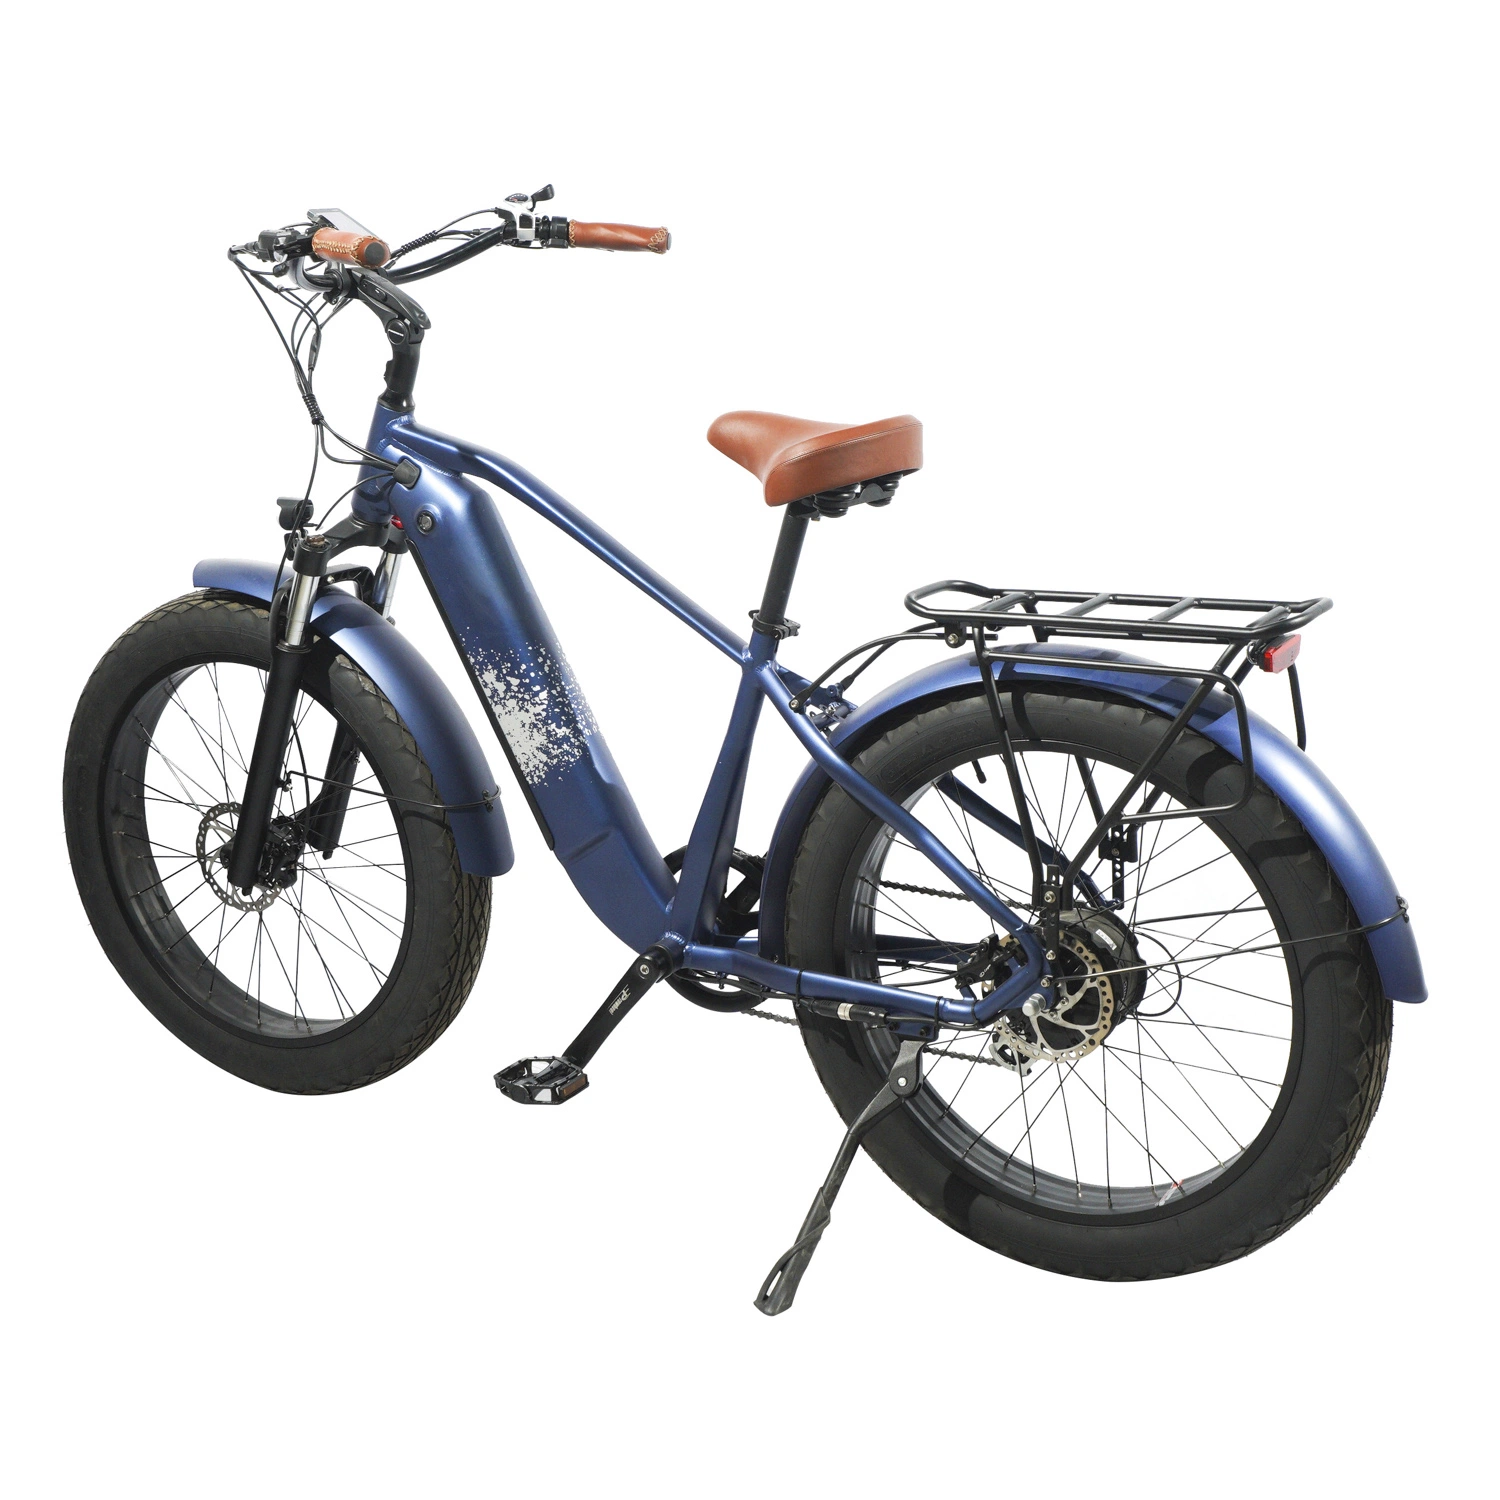 Bon marché adulte 750W 72V graisse électrique pneu vélo saleté vélos Prix chinois